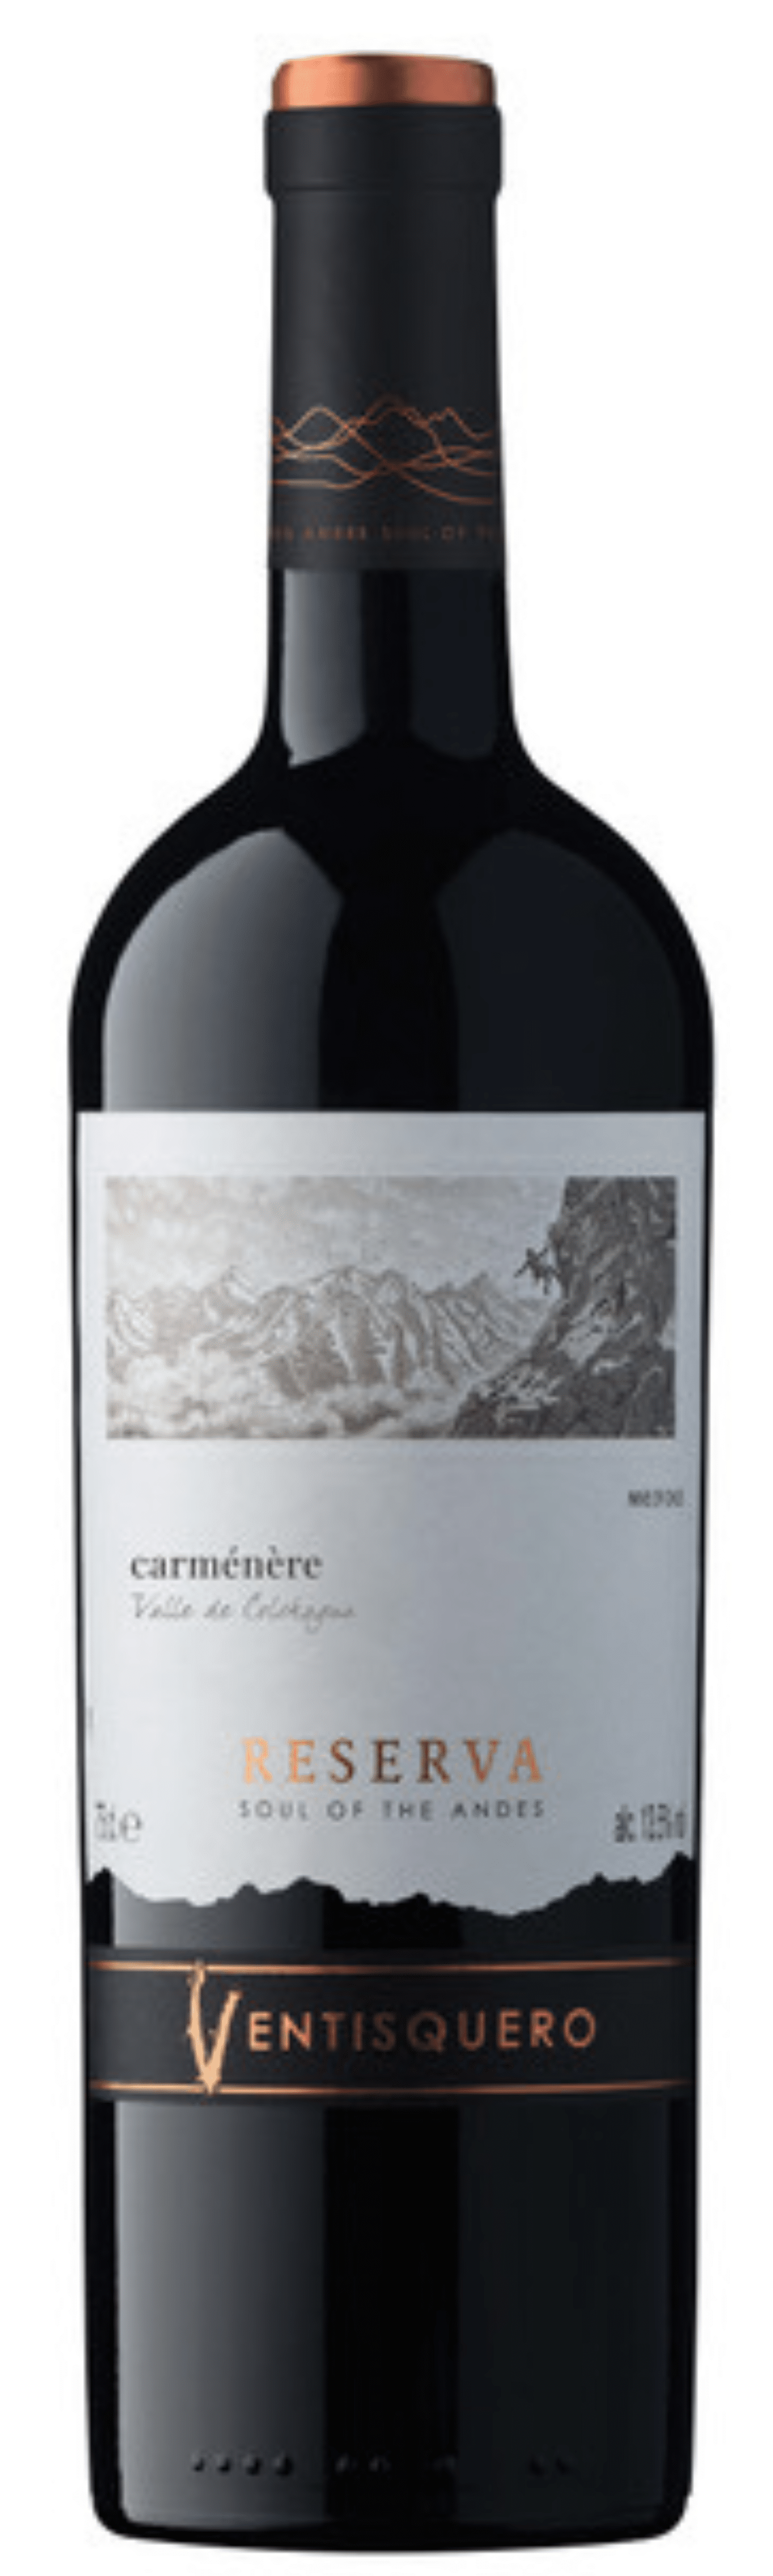 Ventisquero Vin Carmenère VALLE CHILI Trois Reserva 2020 DE Fois COLCHAGUA -